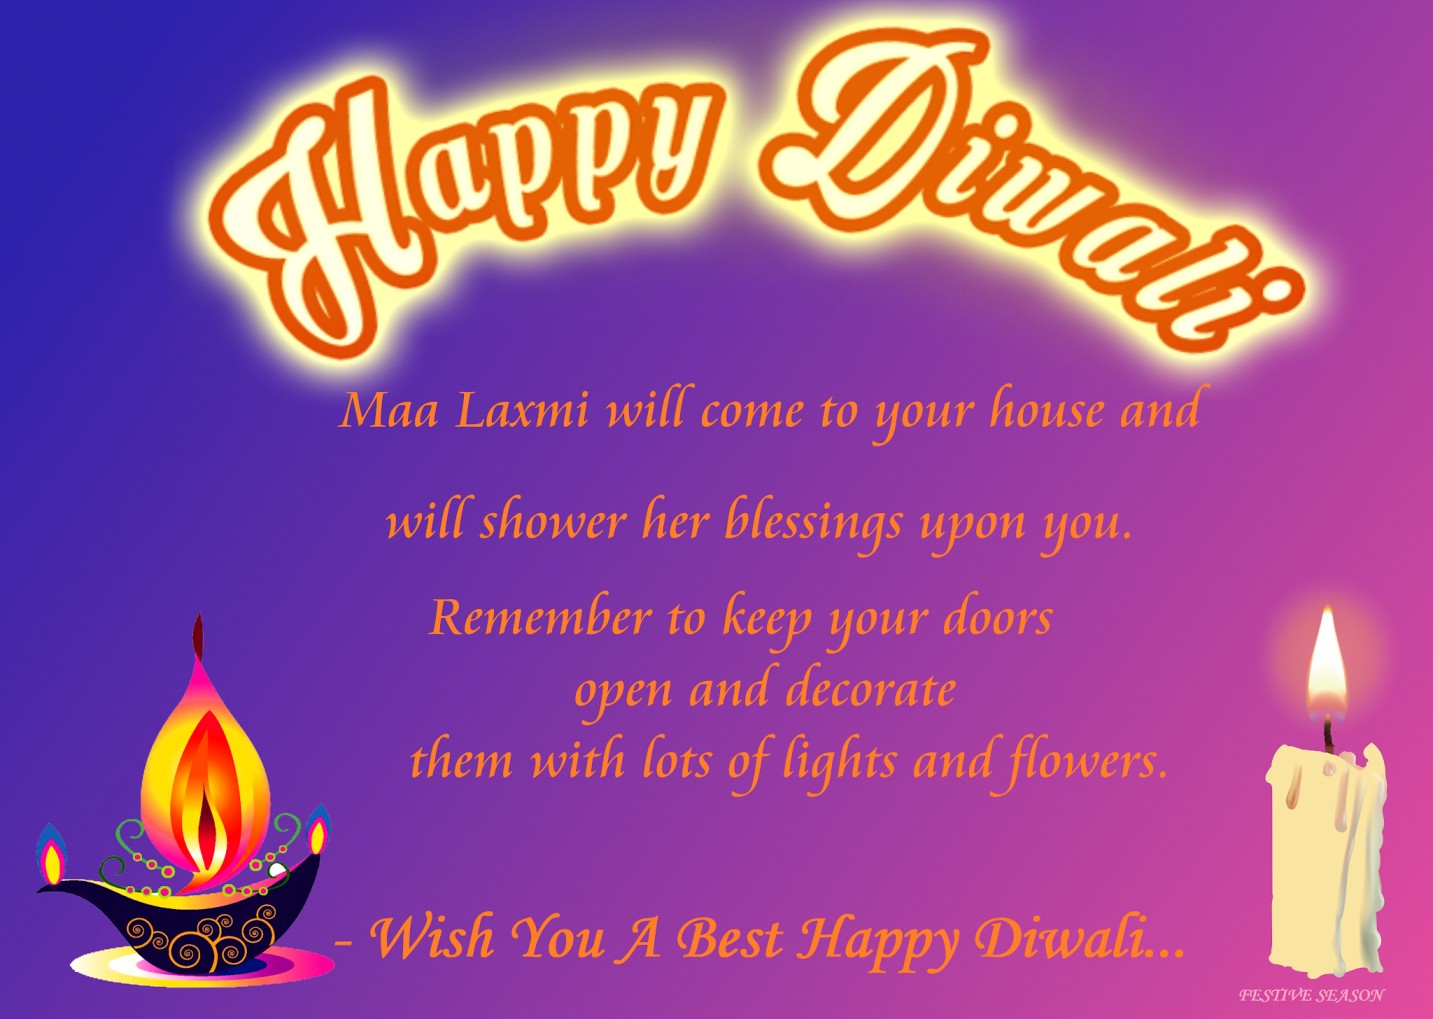 happy diwali with photo, happy diwali photos, happy diwali 2020, happy diwali wishes quotes messages, quotes happy diwali